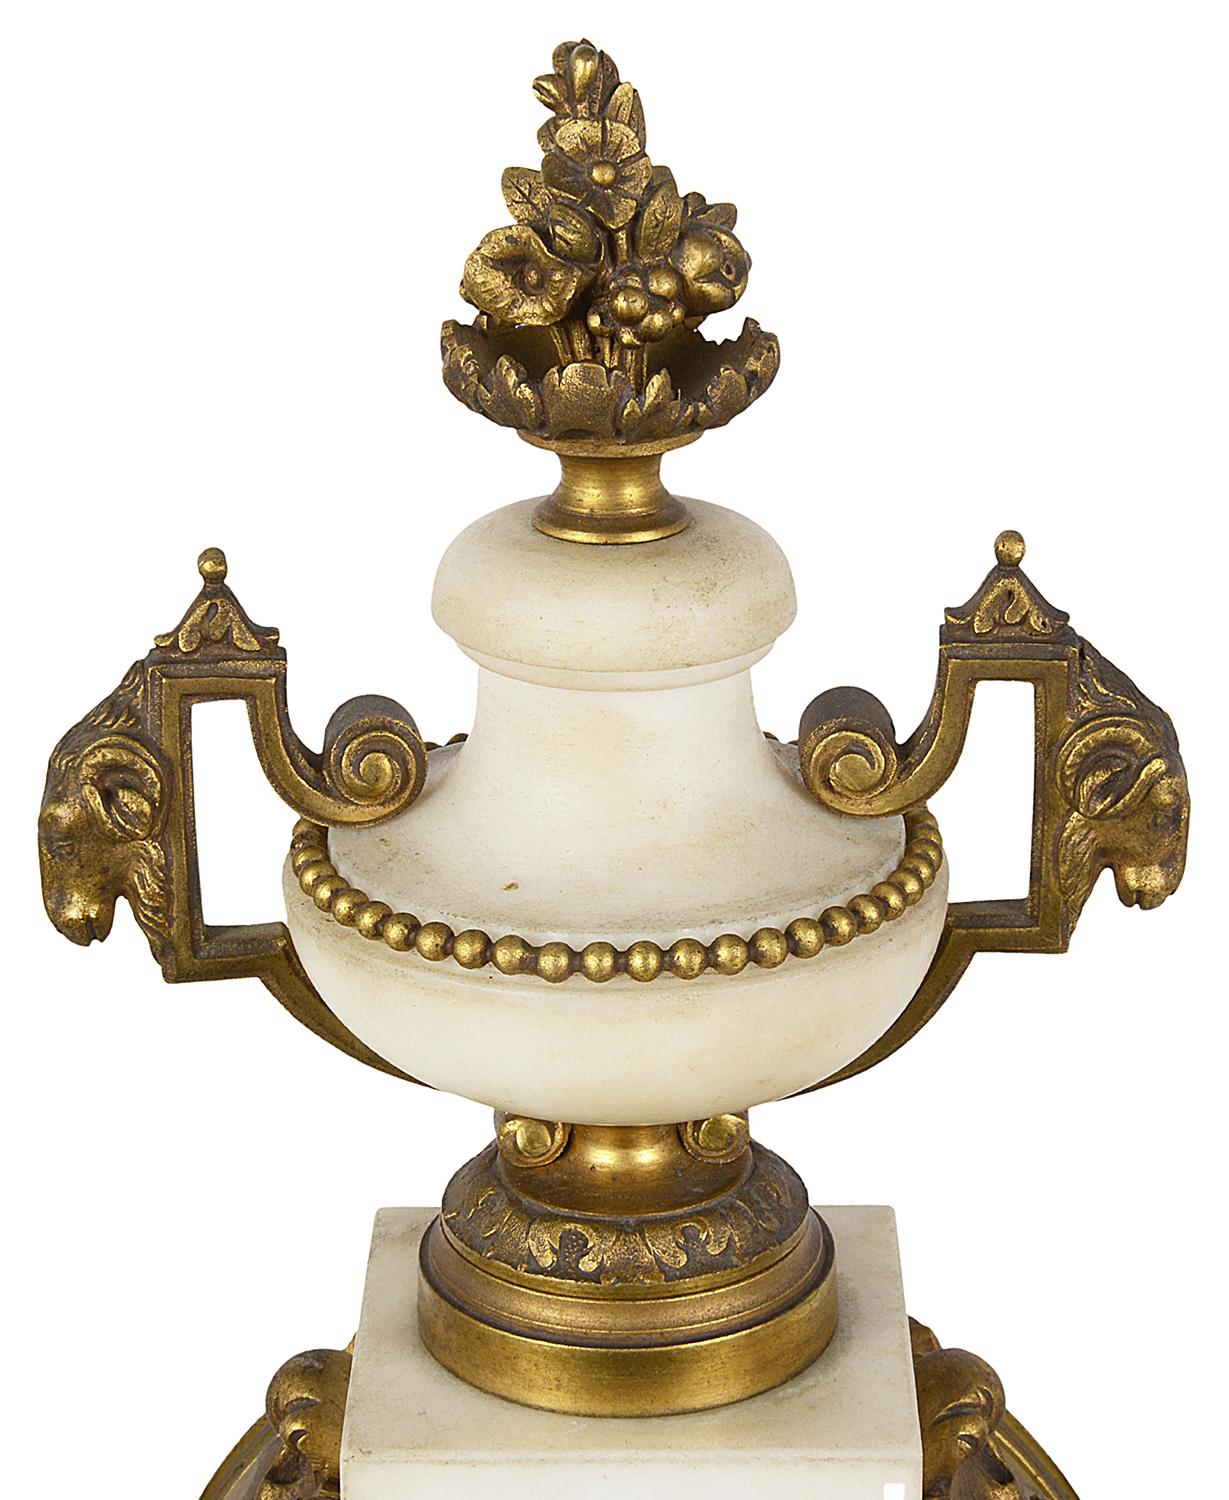 Garniture d'horloge française de style Louis XVI du XIXe siècle en marbre blanc et bronze doré, présentant un fleuron en forme d'urne à deux anses au-dessus d'un cadran en émail blanc, une horloge de huit jours qui sonne à l'heure et à la